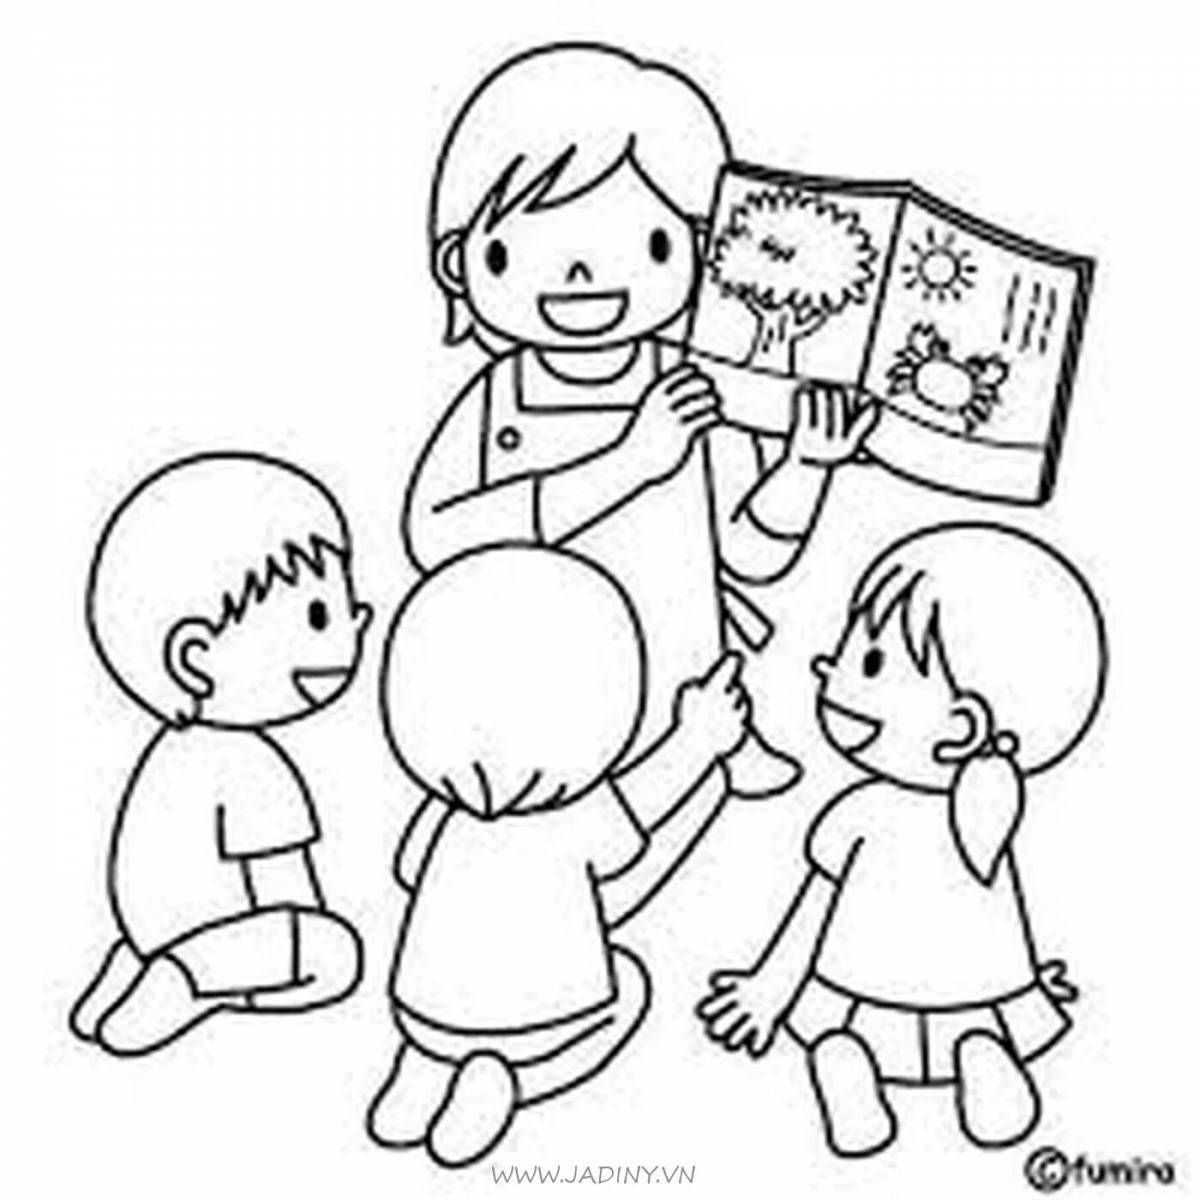 Fun coloring book kindergarten for preschoolers